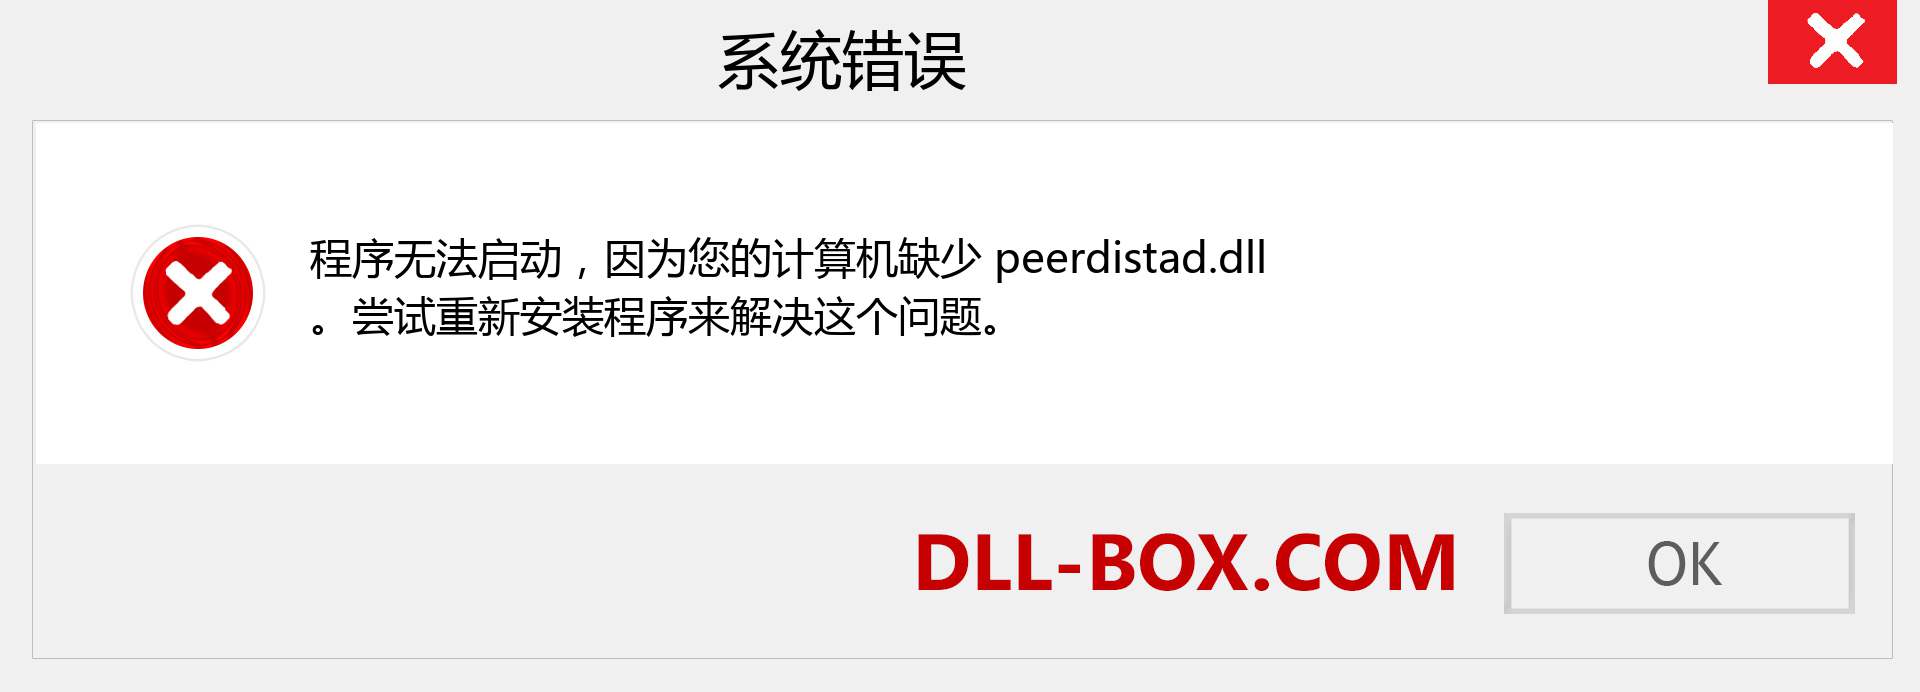 peerdistad.dll 文件丢失？。 适用于 Windows 7、8、10 的下载 - 修复 Windows、照片、图像上的 peerdistad dll 丢失错误